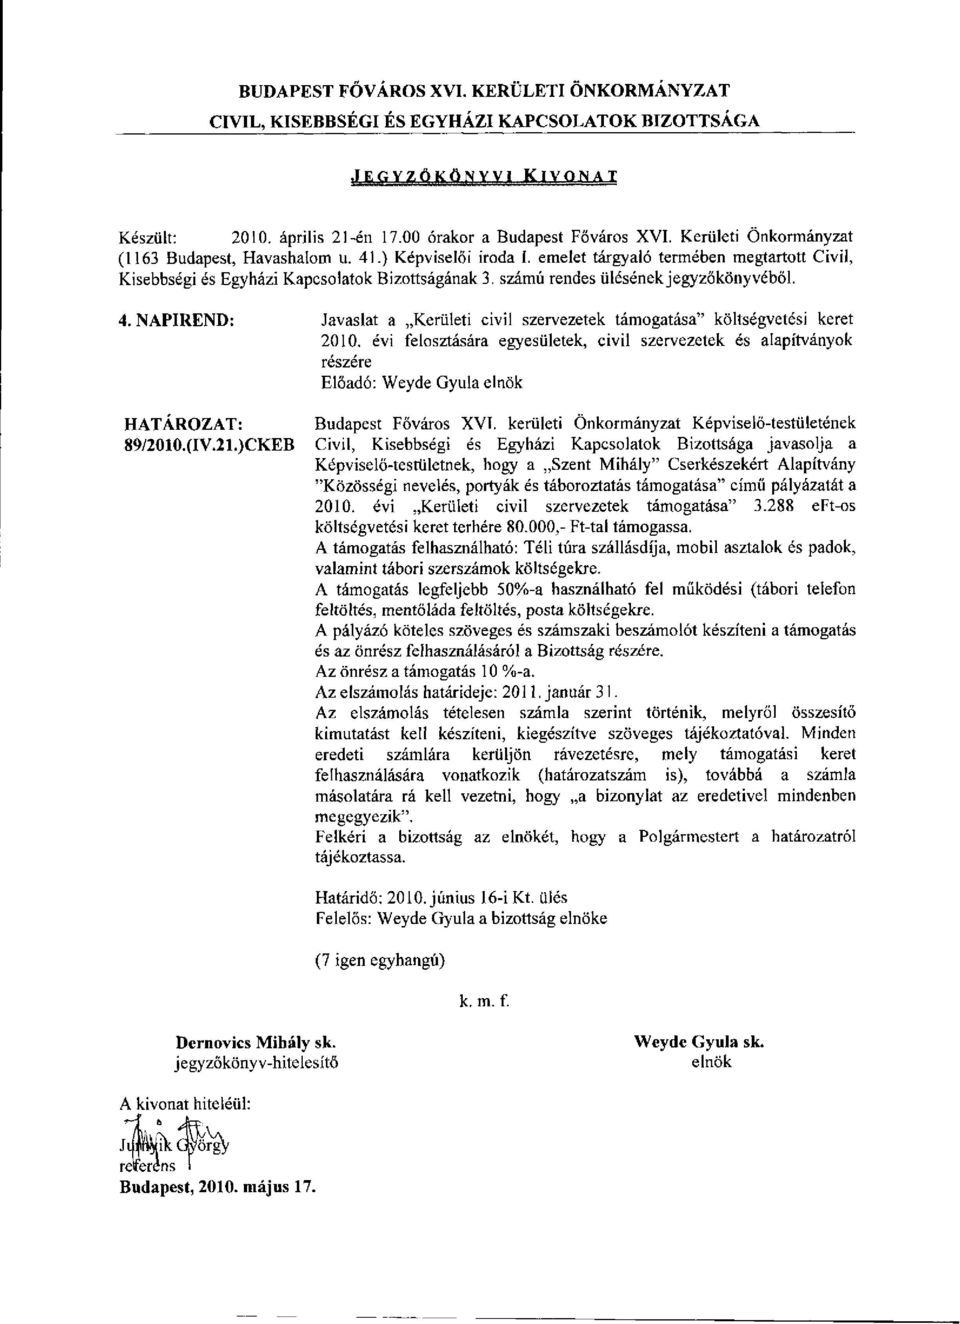 )CKEB javasolja a Képviselő-testületnek, hogy a Szent Mihály" Cserkészekért Alapítvány "Közösségi nevelés, portyák és táboroztatás támogatása" című pályázatát a 2010.